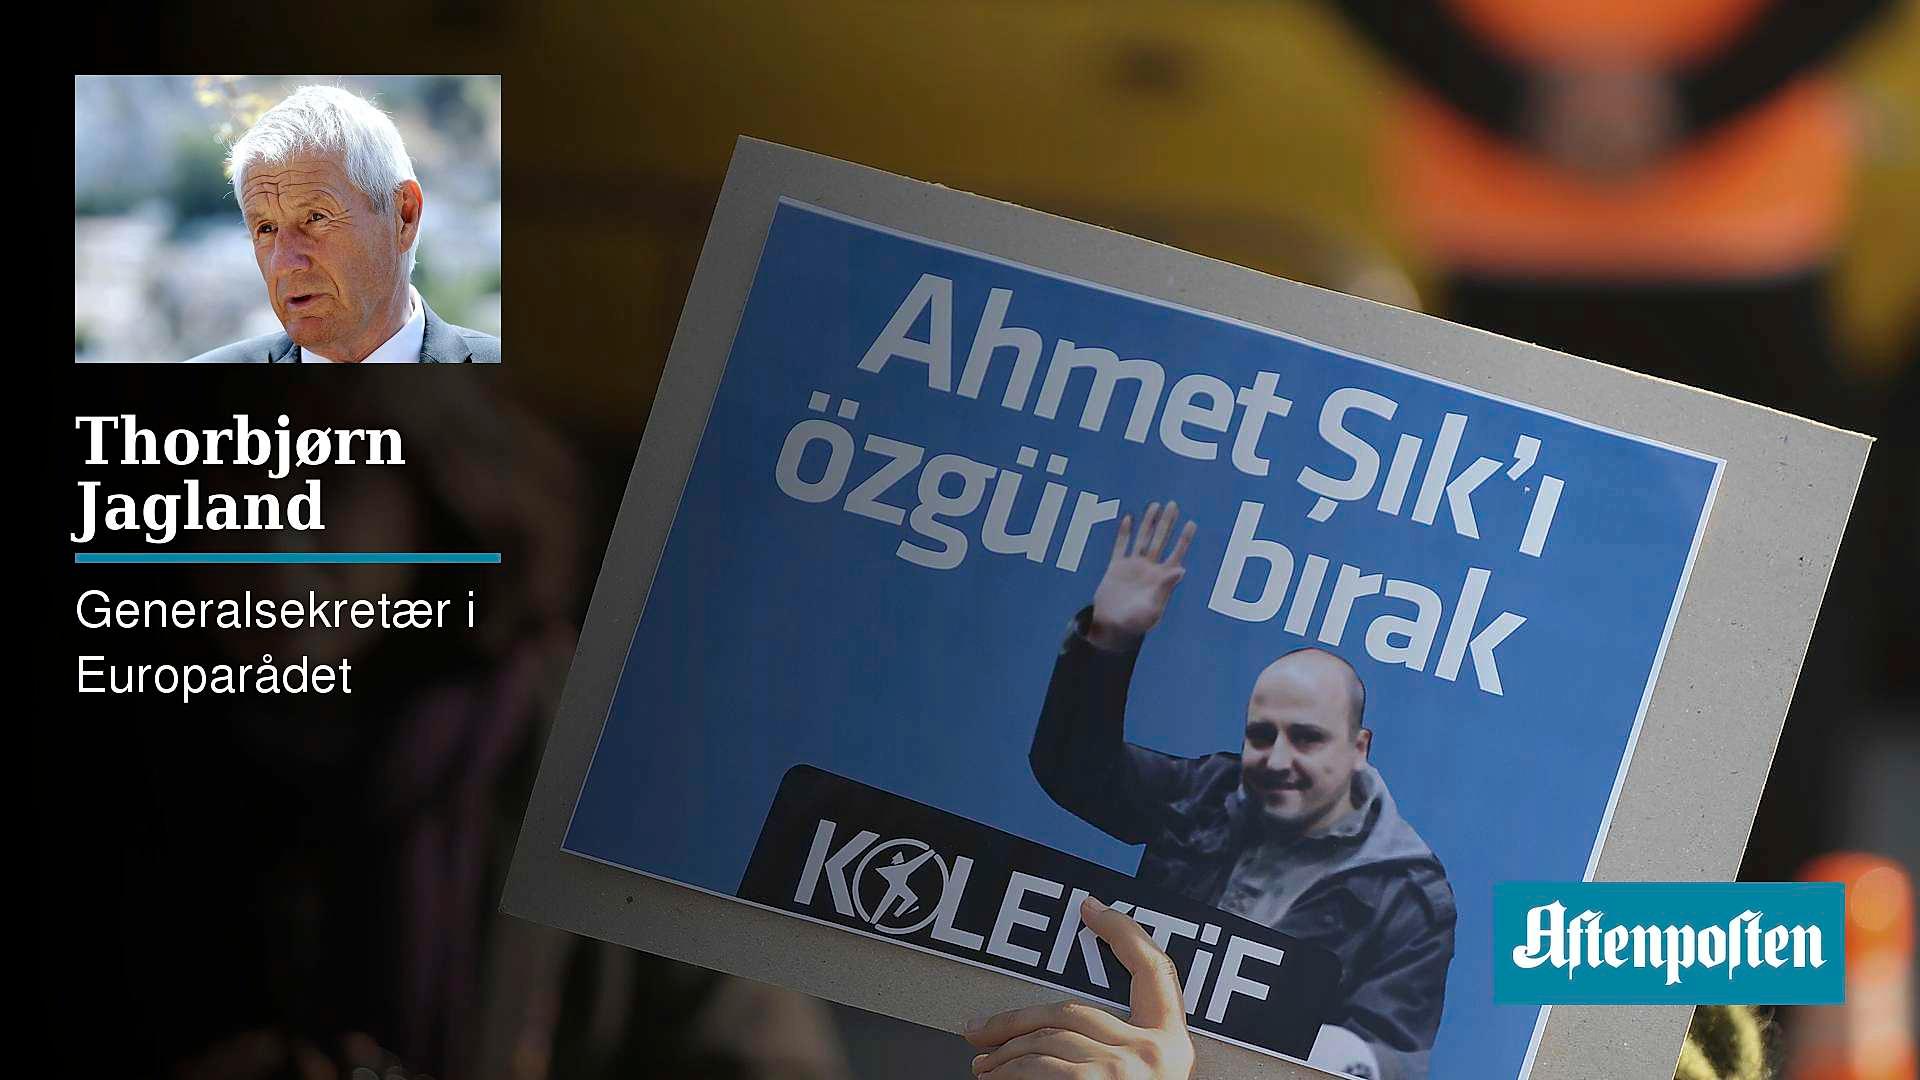 Journalistene Nadim Sener og Acmet Sik ble holdt i varetekt uten beviselig grunn, noe som vekket stor oppsikt også i Norge. Her protesterer Siks kolleger utenfor et rettslokale i Istanbul i 2011.